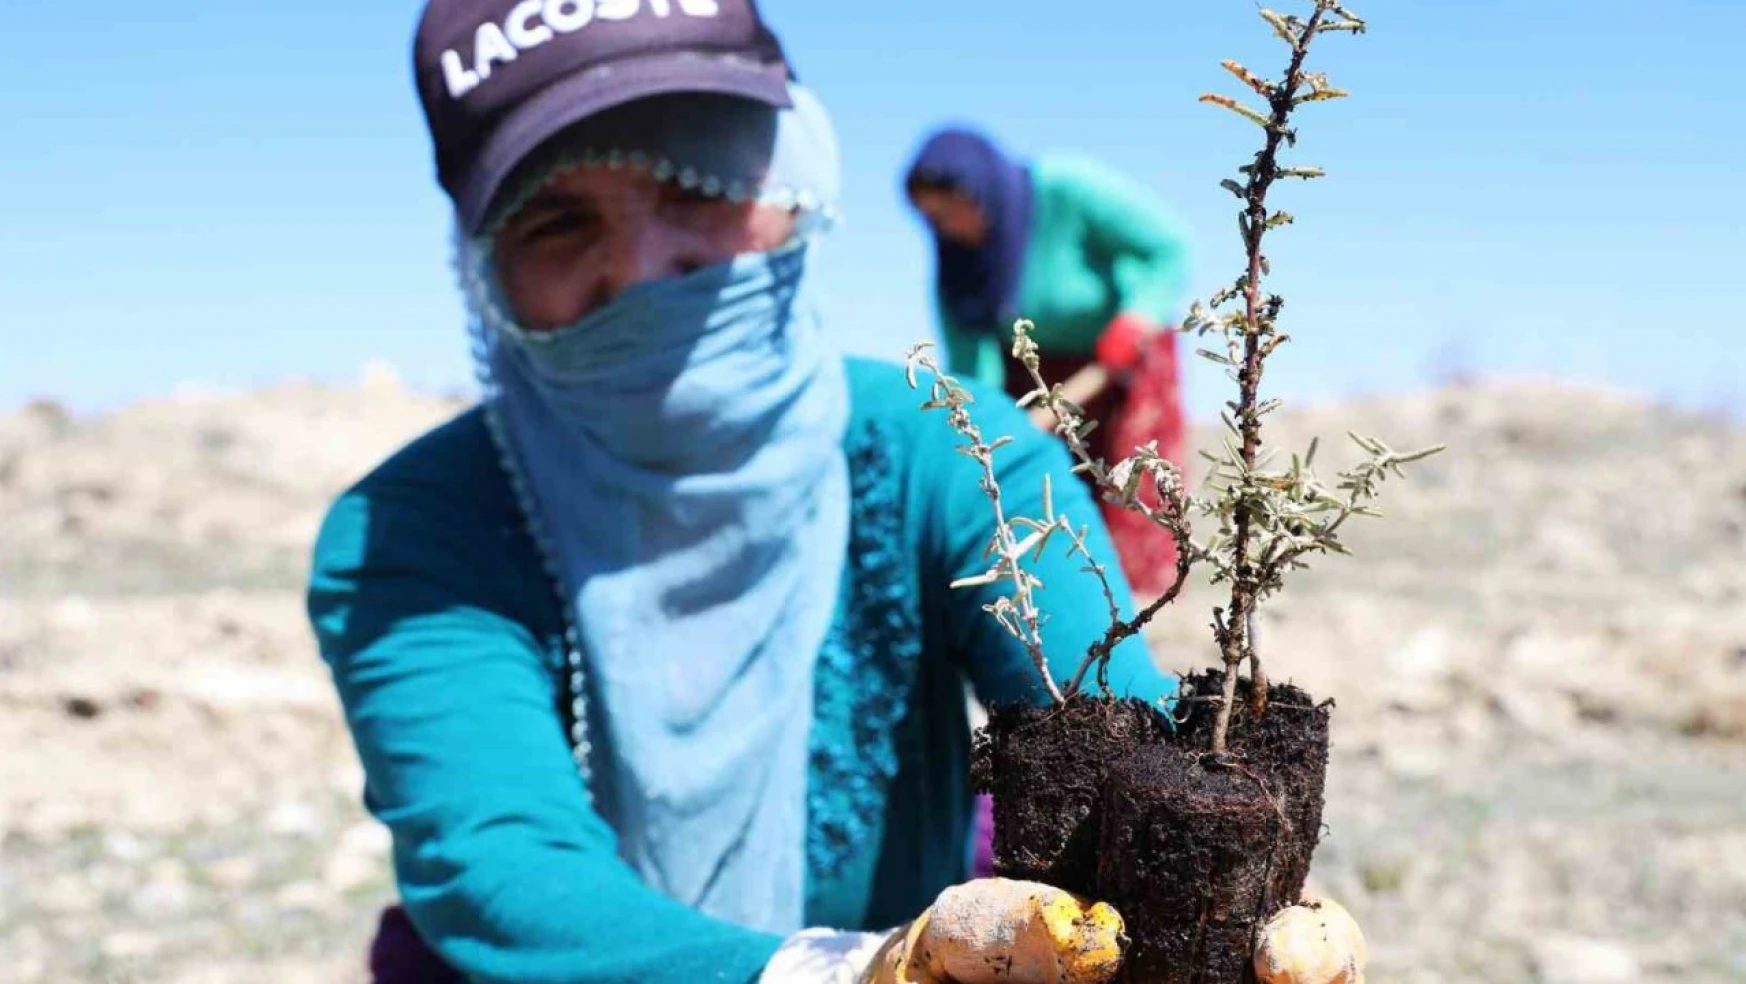 Elazığ'da tarımsal ekosistemler için önemli adım: Amerikan tuz çalısıyla ilk kez mera ıslahı başladı